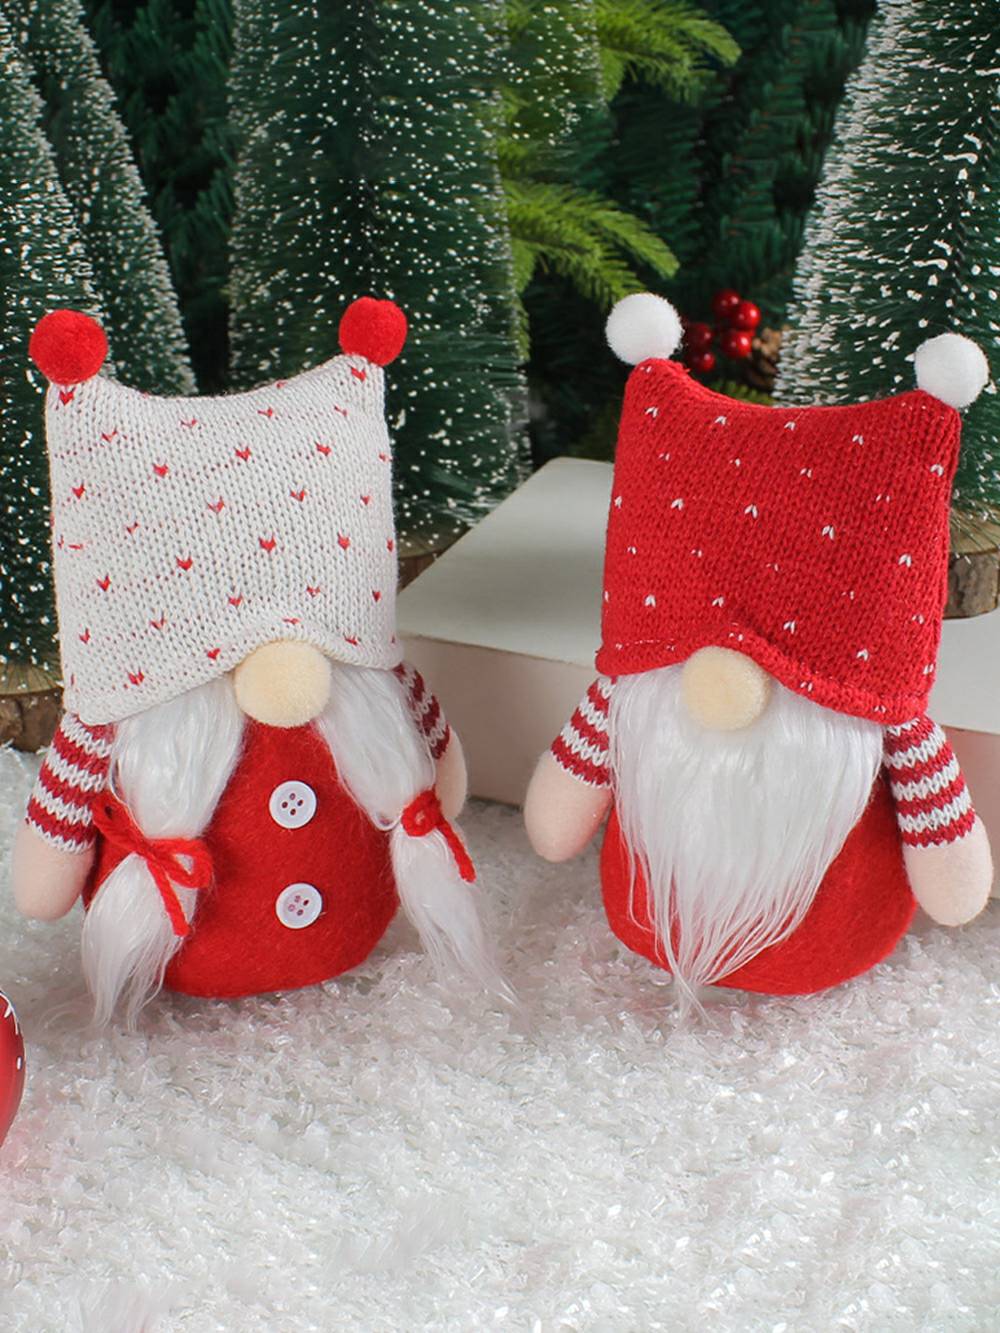 Yndigt juleplys nissepar med strikhue Rudolph Dolls